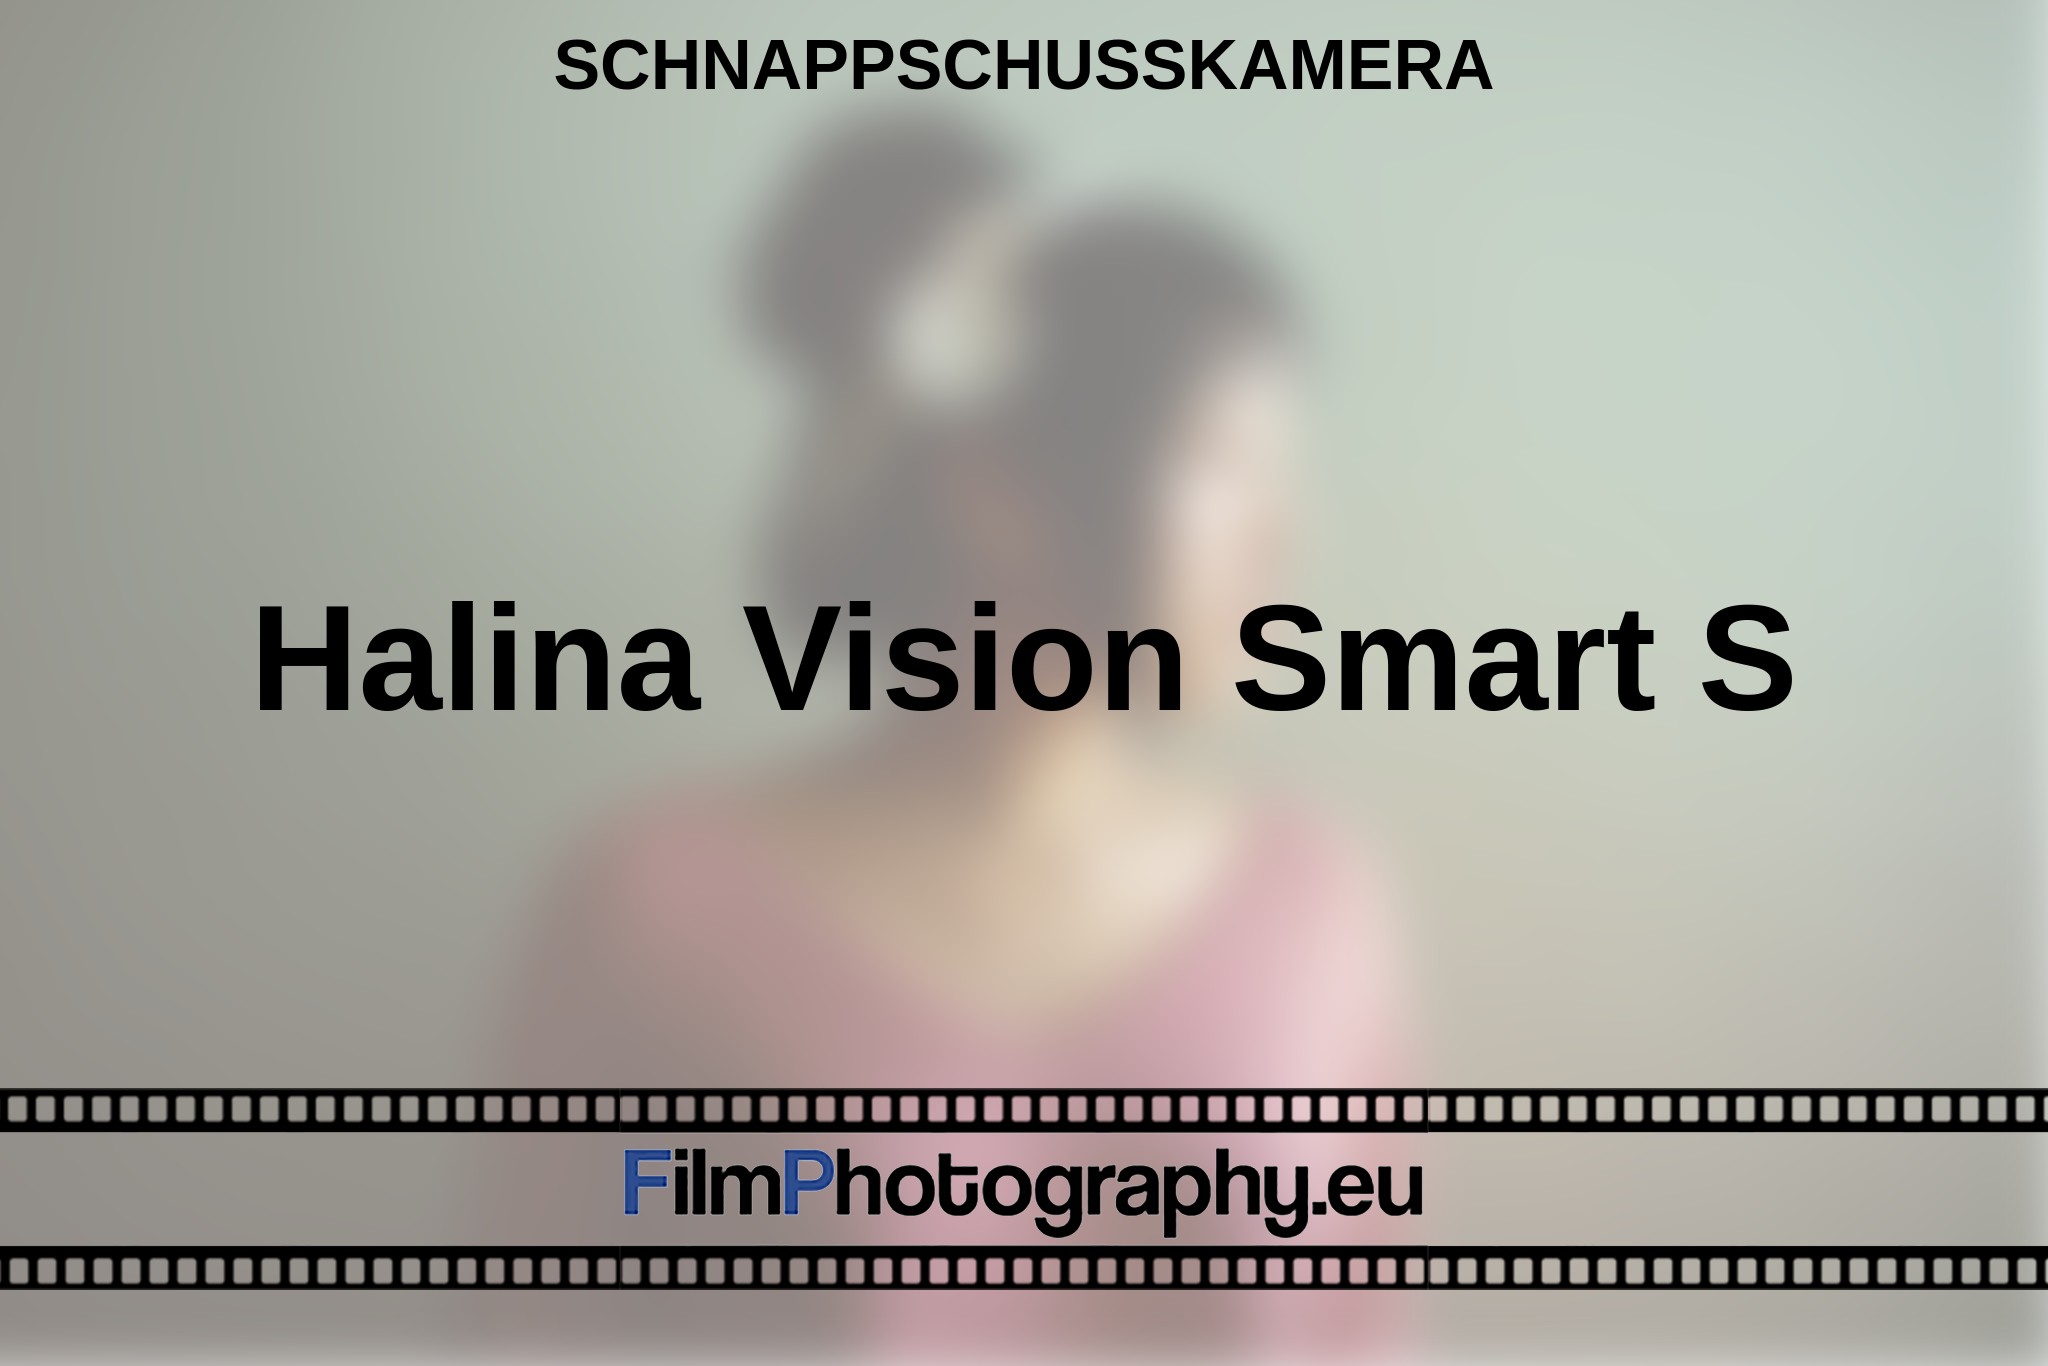 halina-vision-smart-s-schnappschusskamera-bnv.jpg